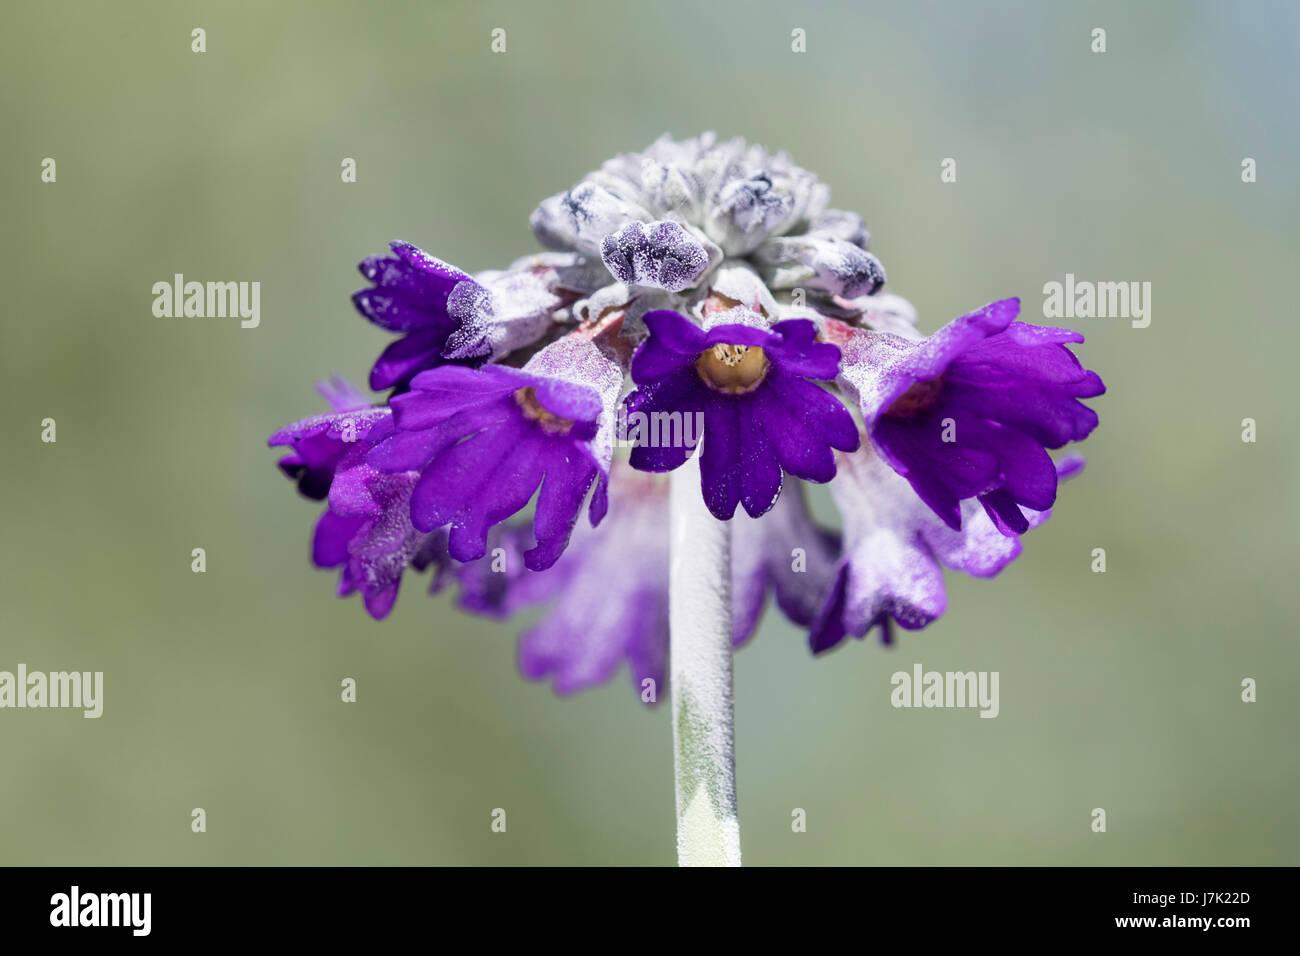 Chef de la fleur vivace courte asiatic primrose, Primula capitata, montrant les fleurs violettes et blanches revêtement farina sur la tige et les bourgeons Banque D'Images